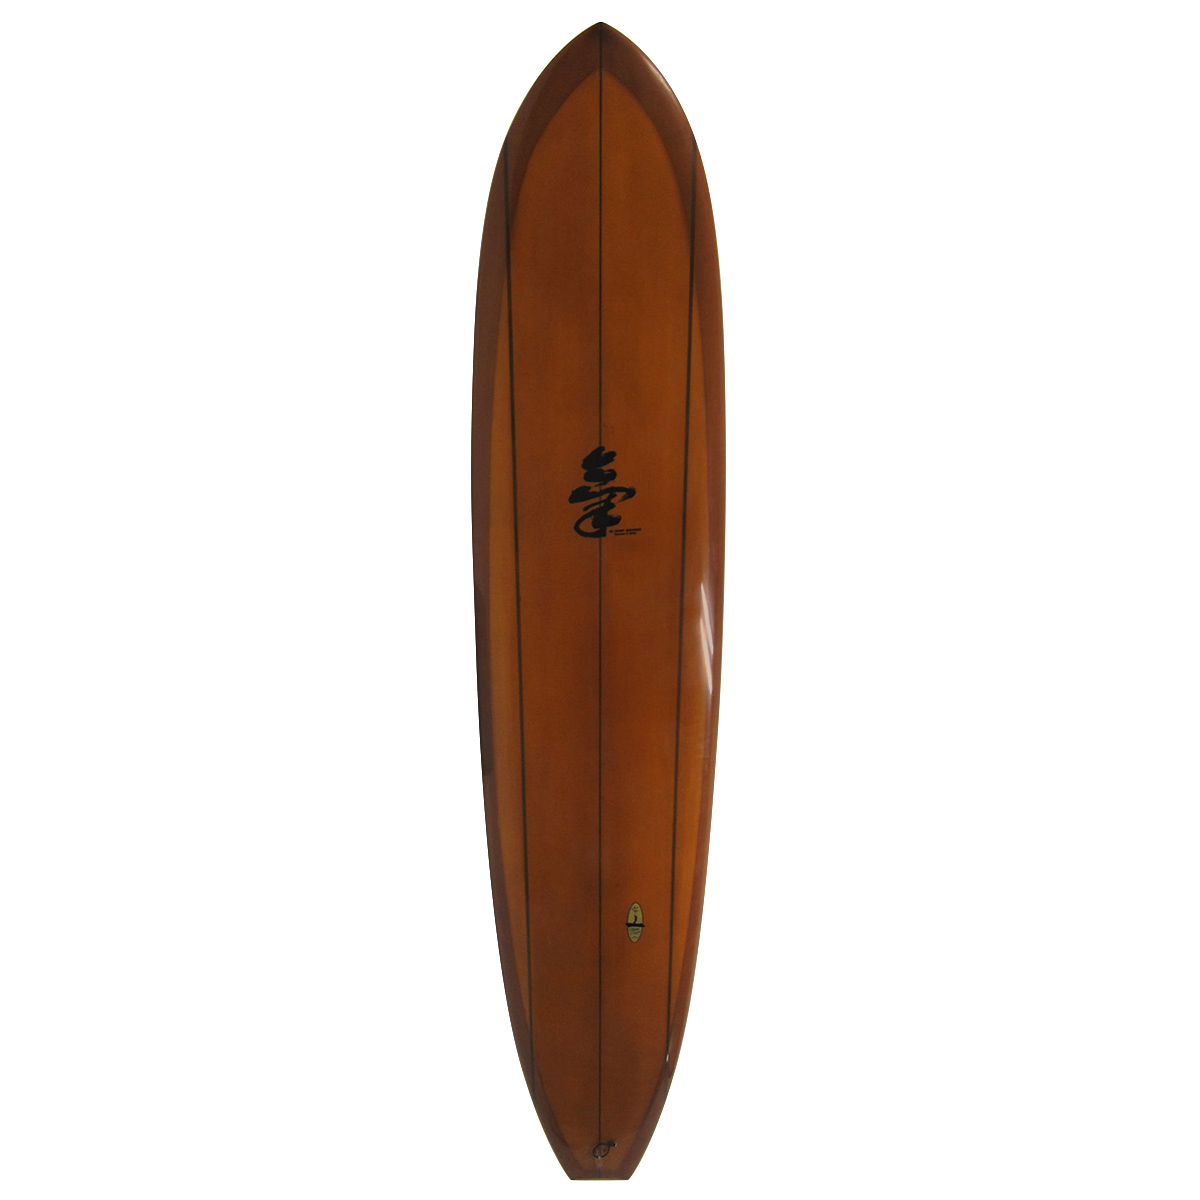 KI surf board 氣 サーフボード ミッドレングス 8.0 ヤングビンテージ 超浮力 個人出品 配送可能